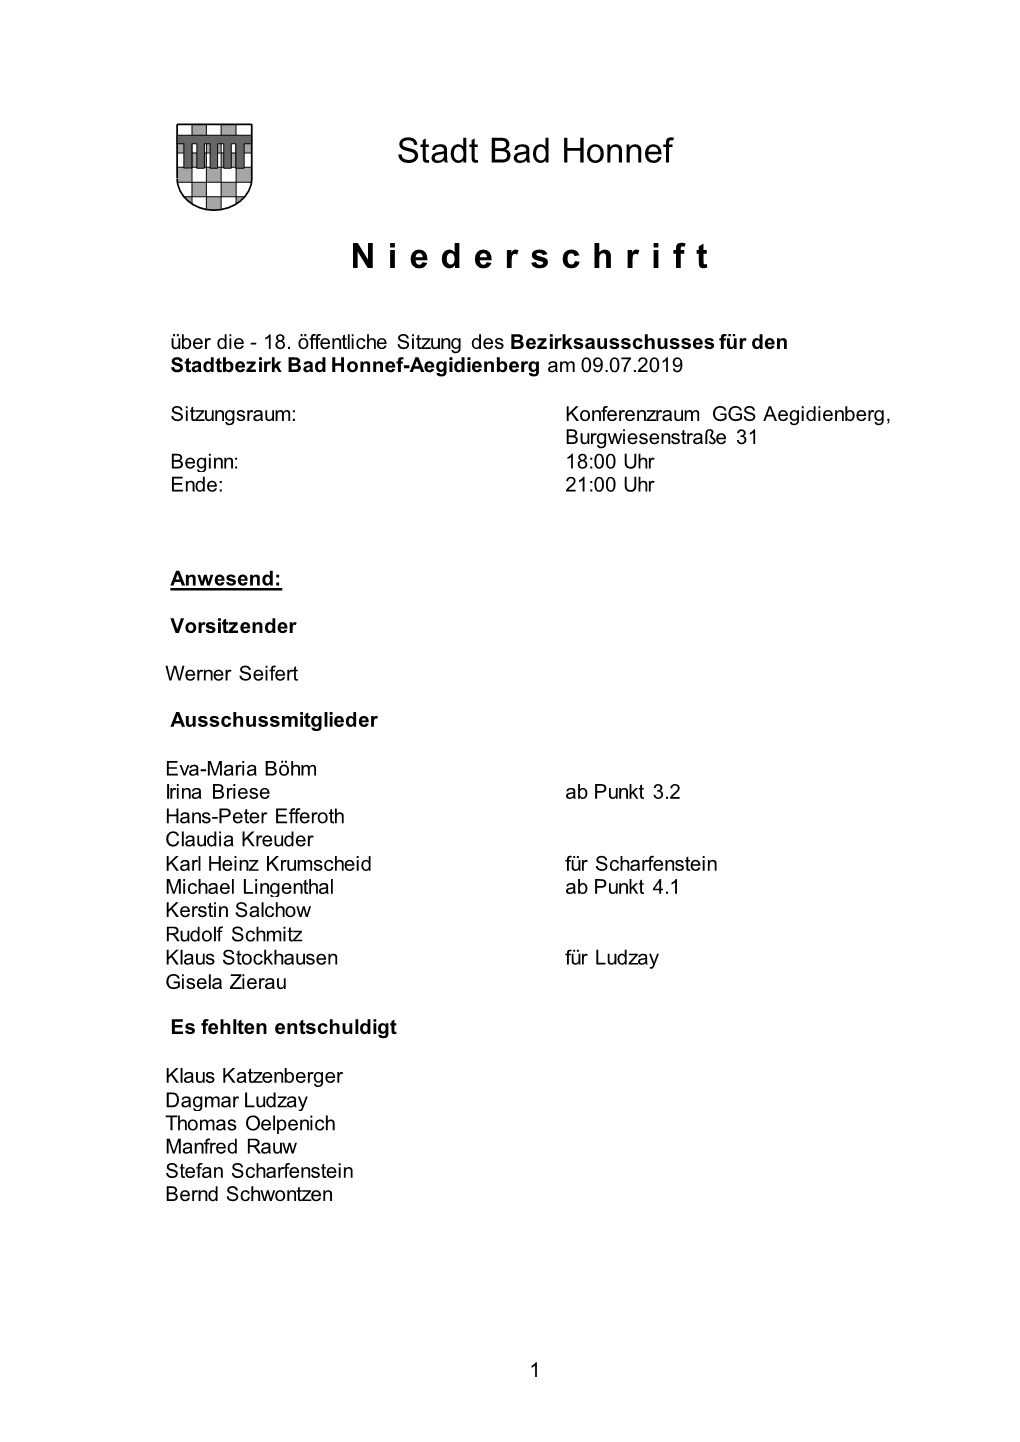 Sitzung Des Bezirksausschusses Für Den Stadtbezirk Bad Honnef-Aegidienberg Am 09.07.2019